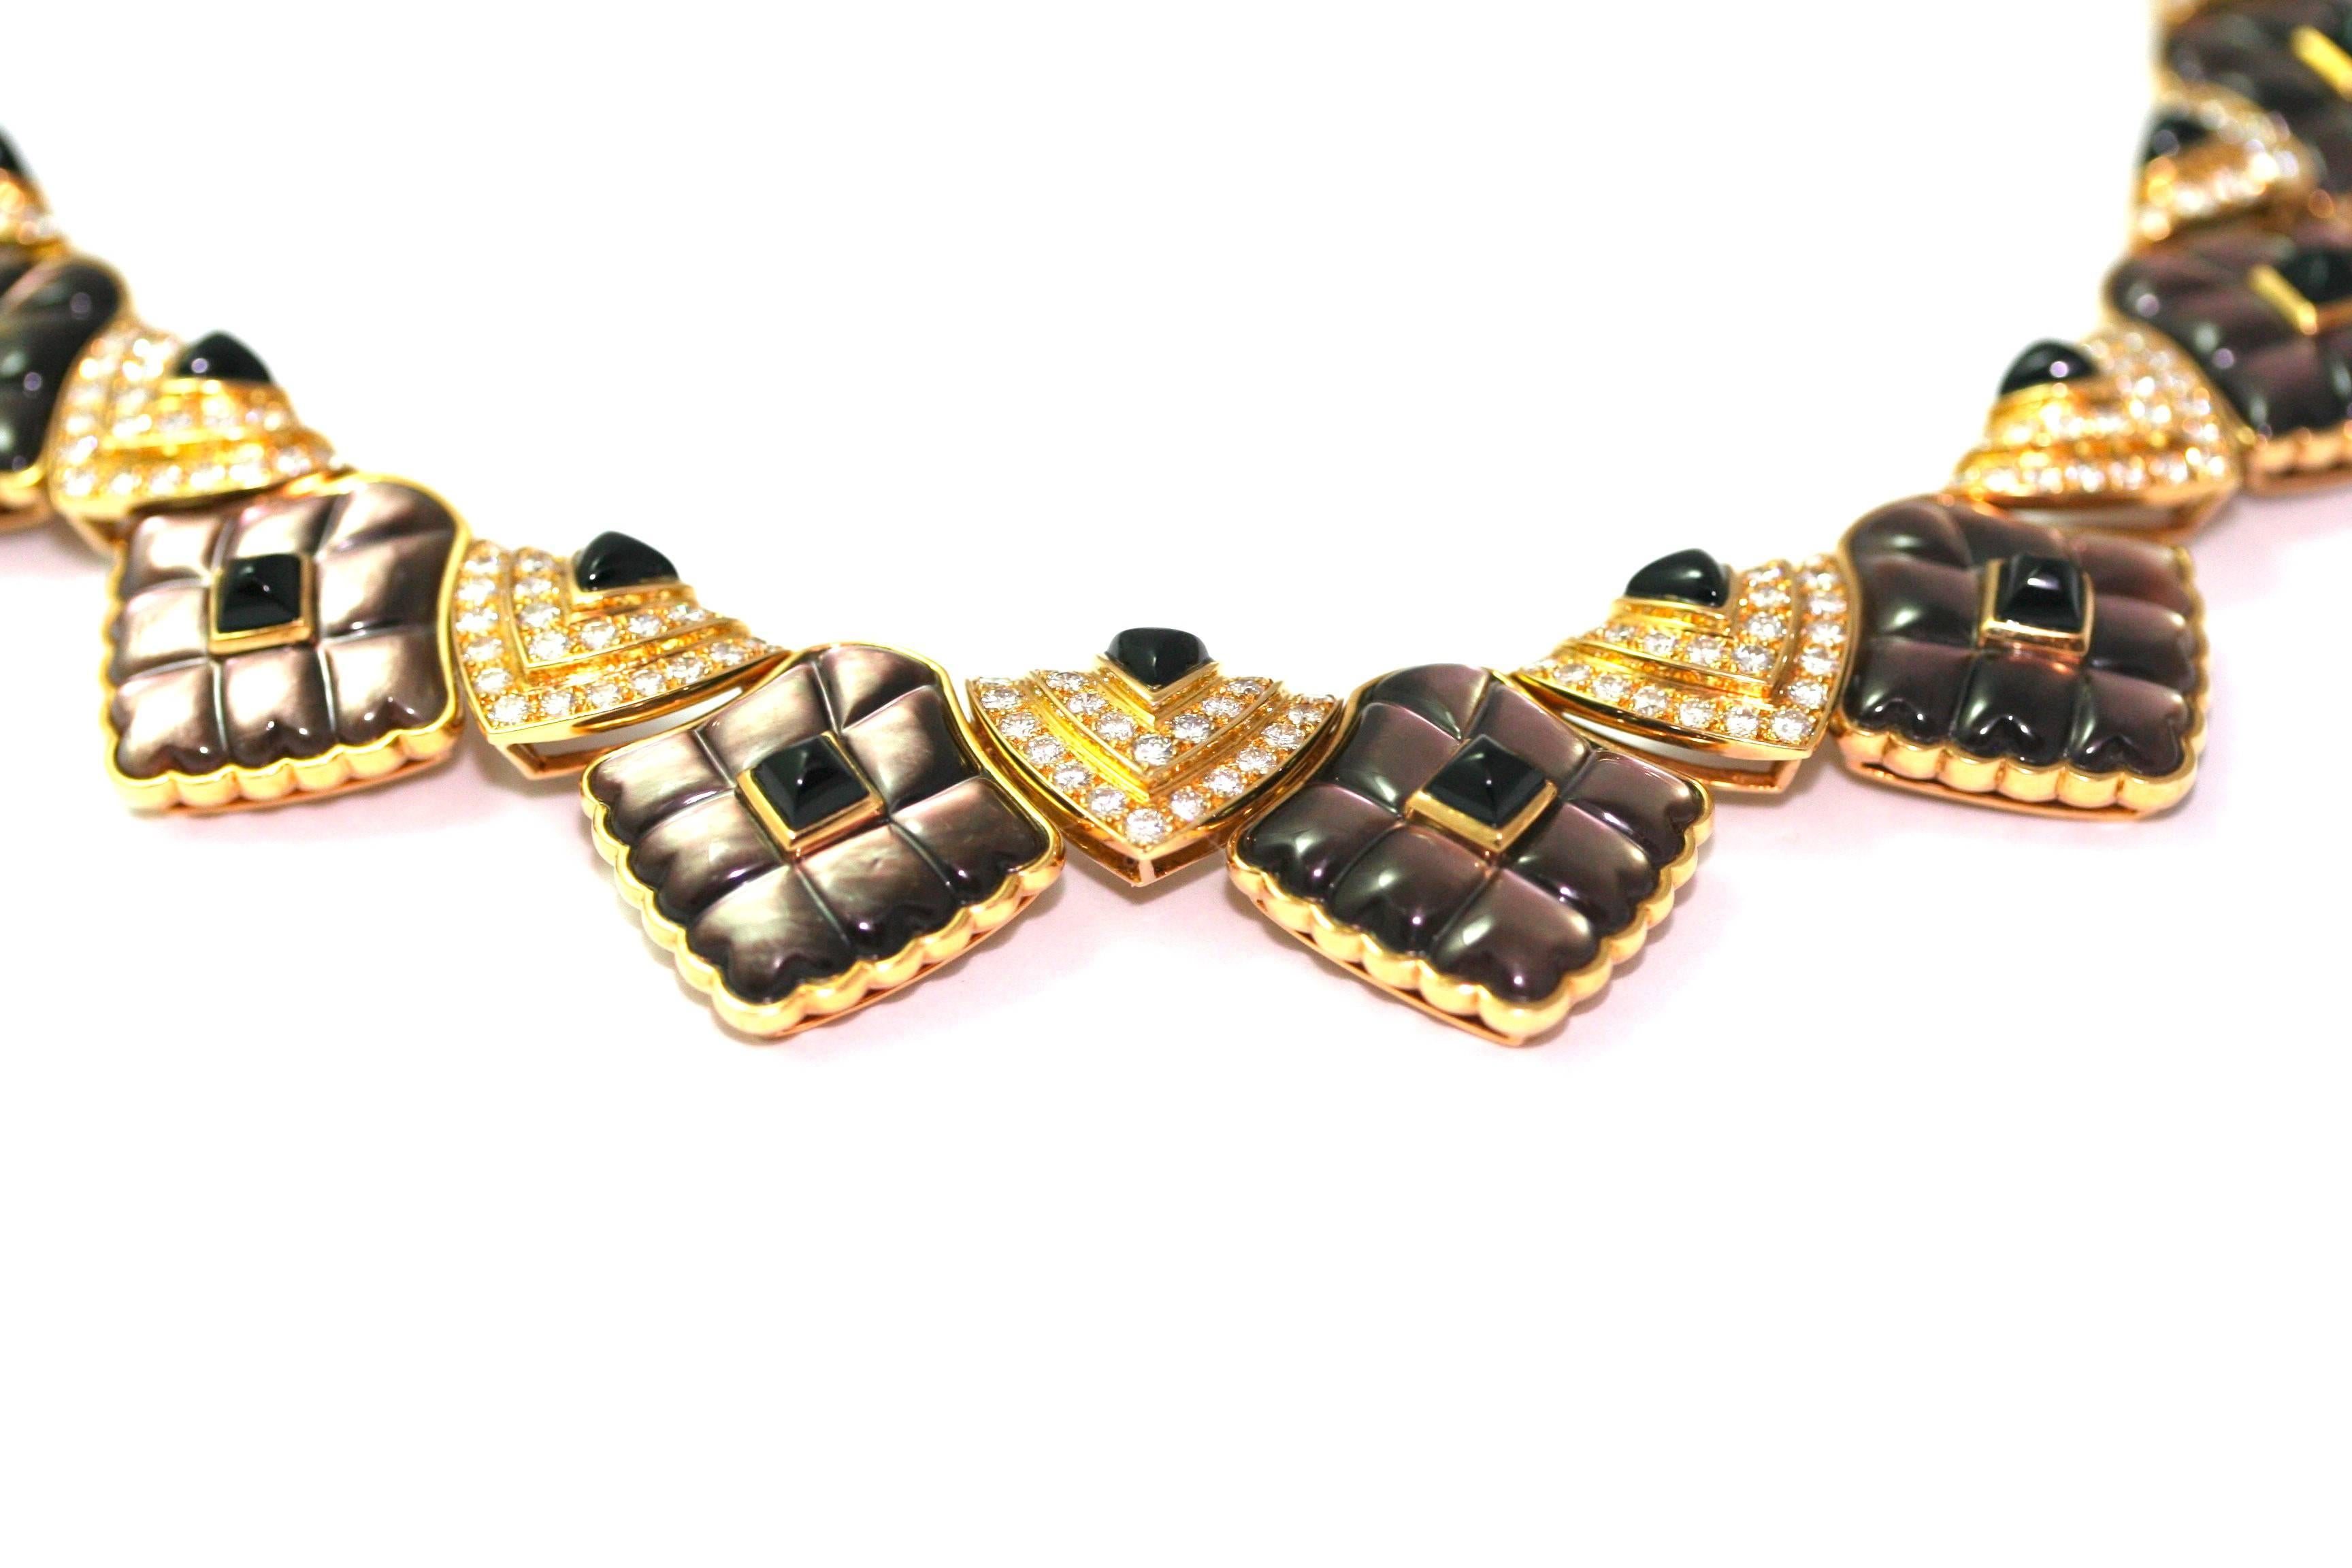 Seltene Mauboussin-Halskette aus den 70er bis 80er Jahren. 
Diese Halskette besteht aus verschiedenen geometrischen Formen.
14 dreieckige Motive, besetzt mit Diamanten und Zuckerhut-Onyx, die 5 zentralen Motive sind größer, mit zwei Reihen von